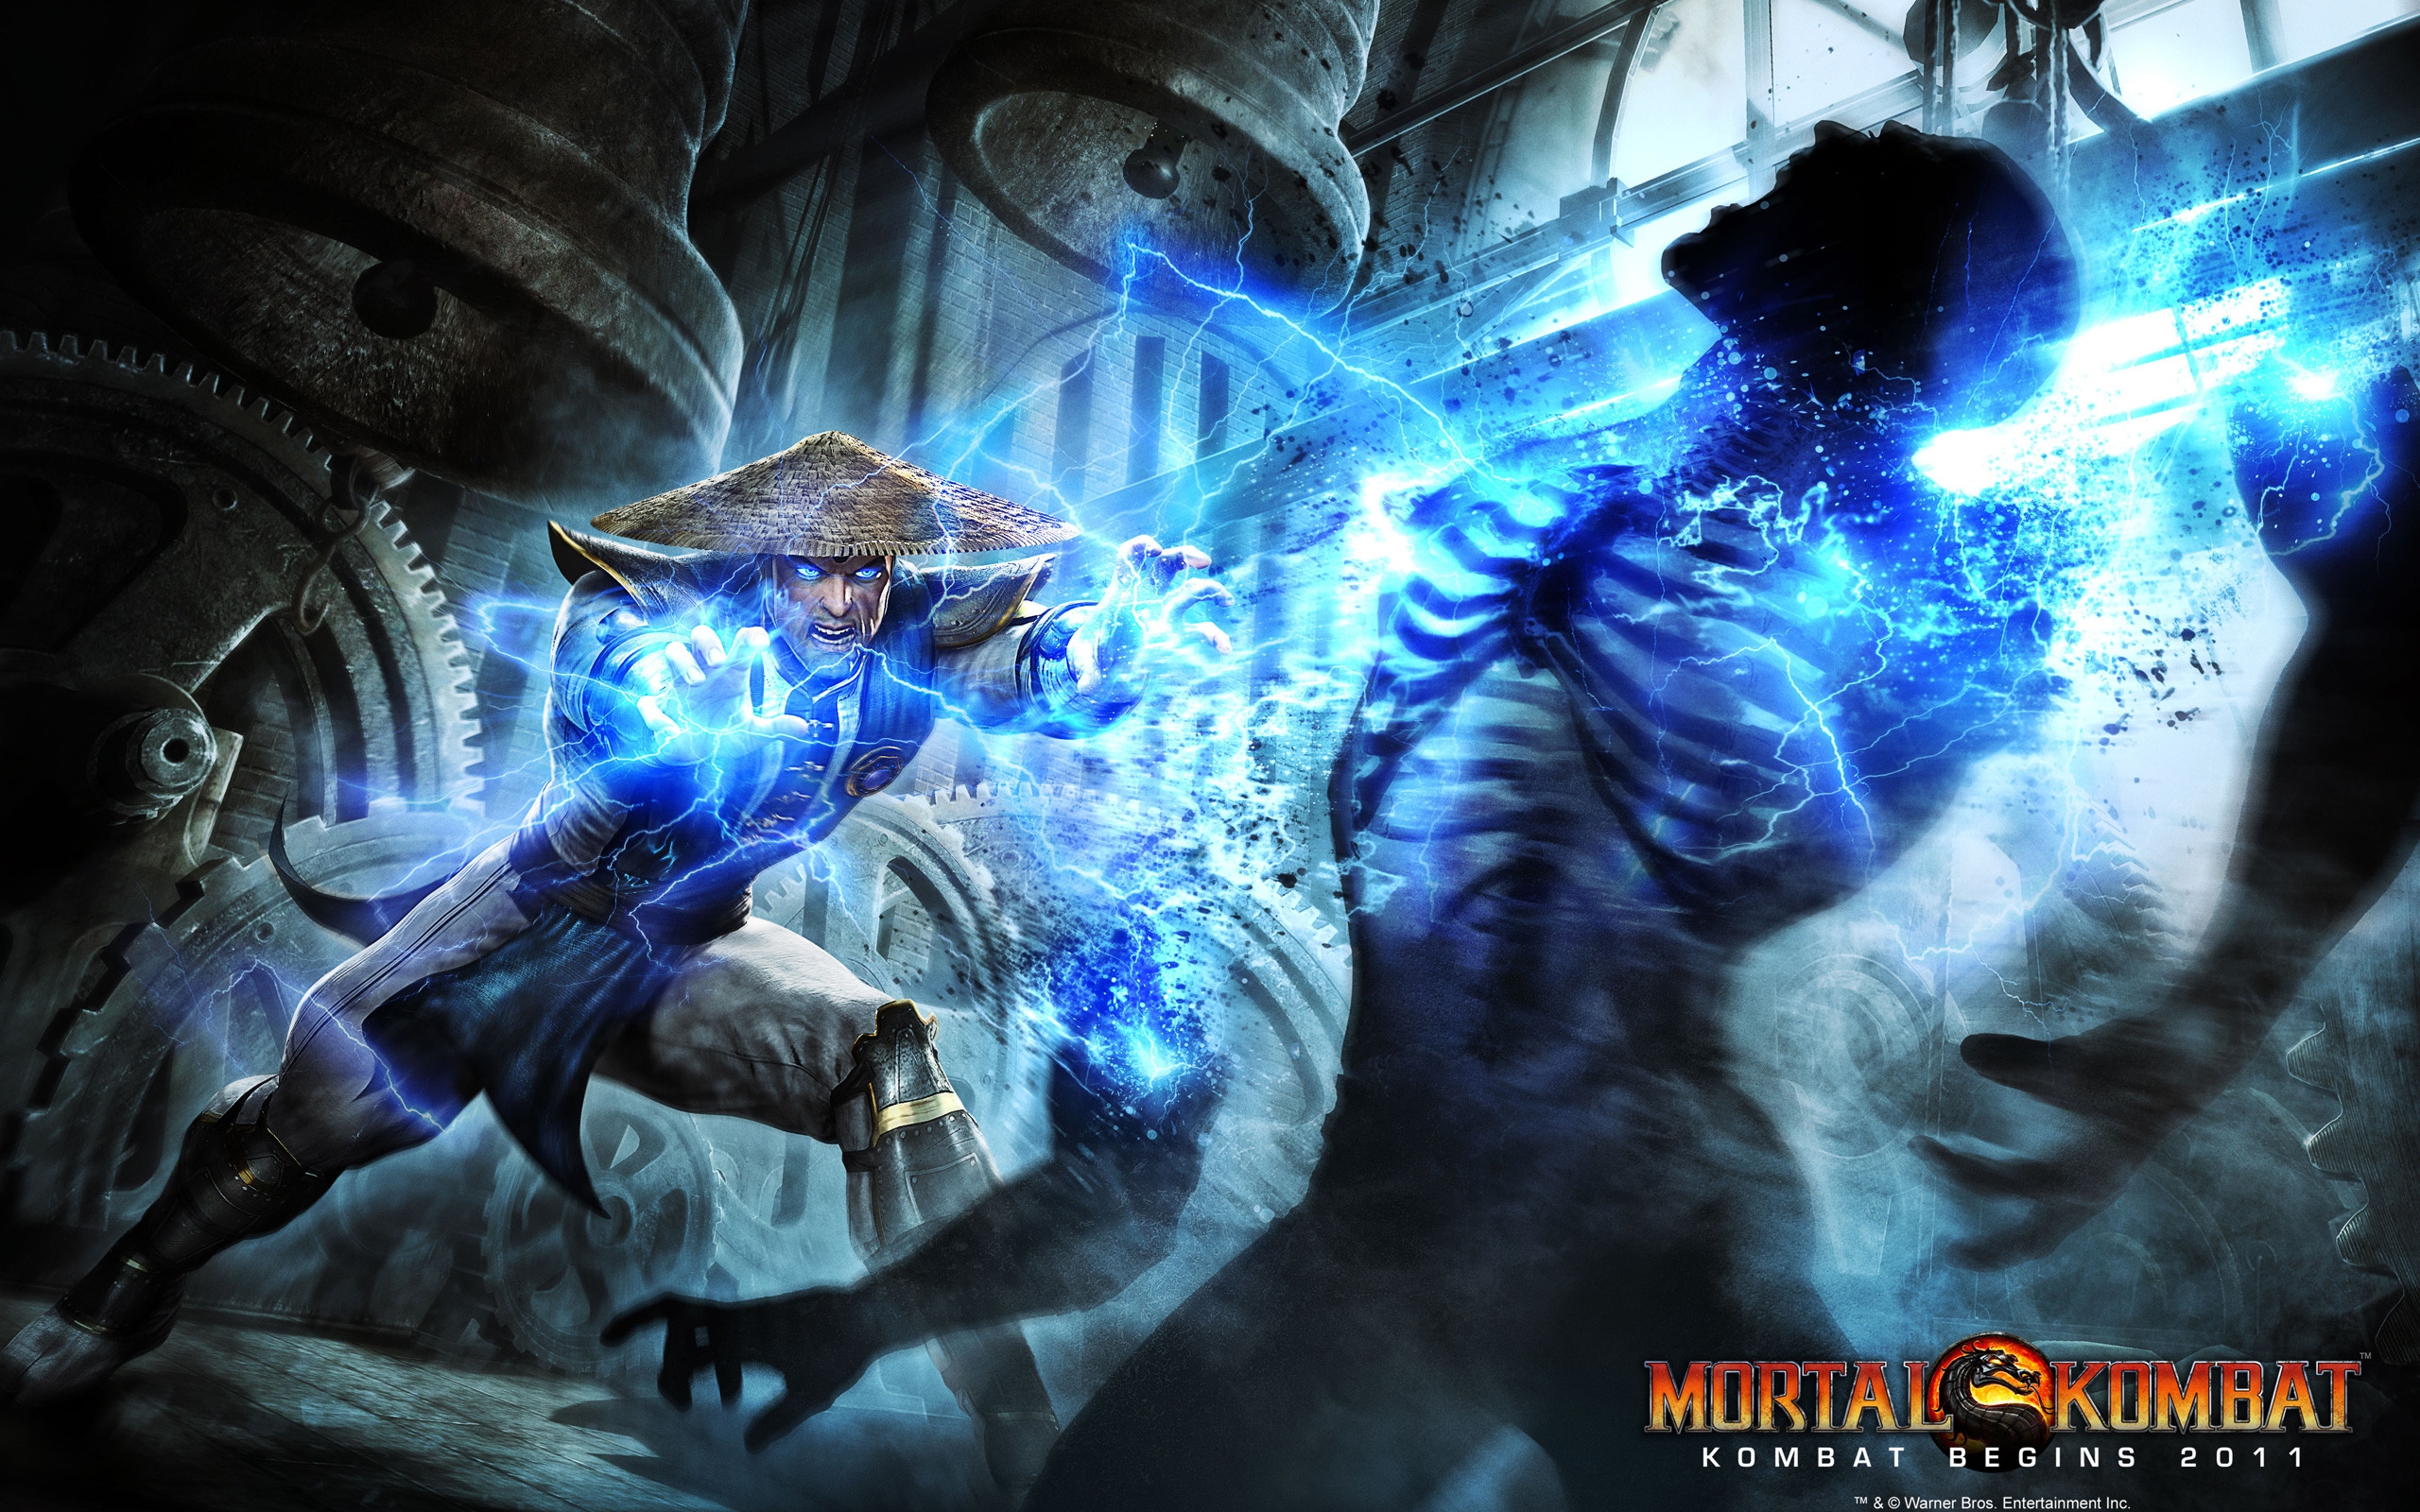 Mortal Kombat Raiden for 2560 x 1600 widescreen resolution